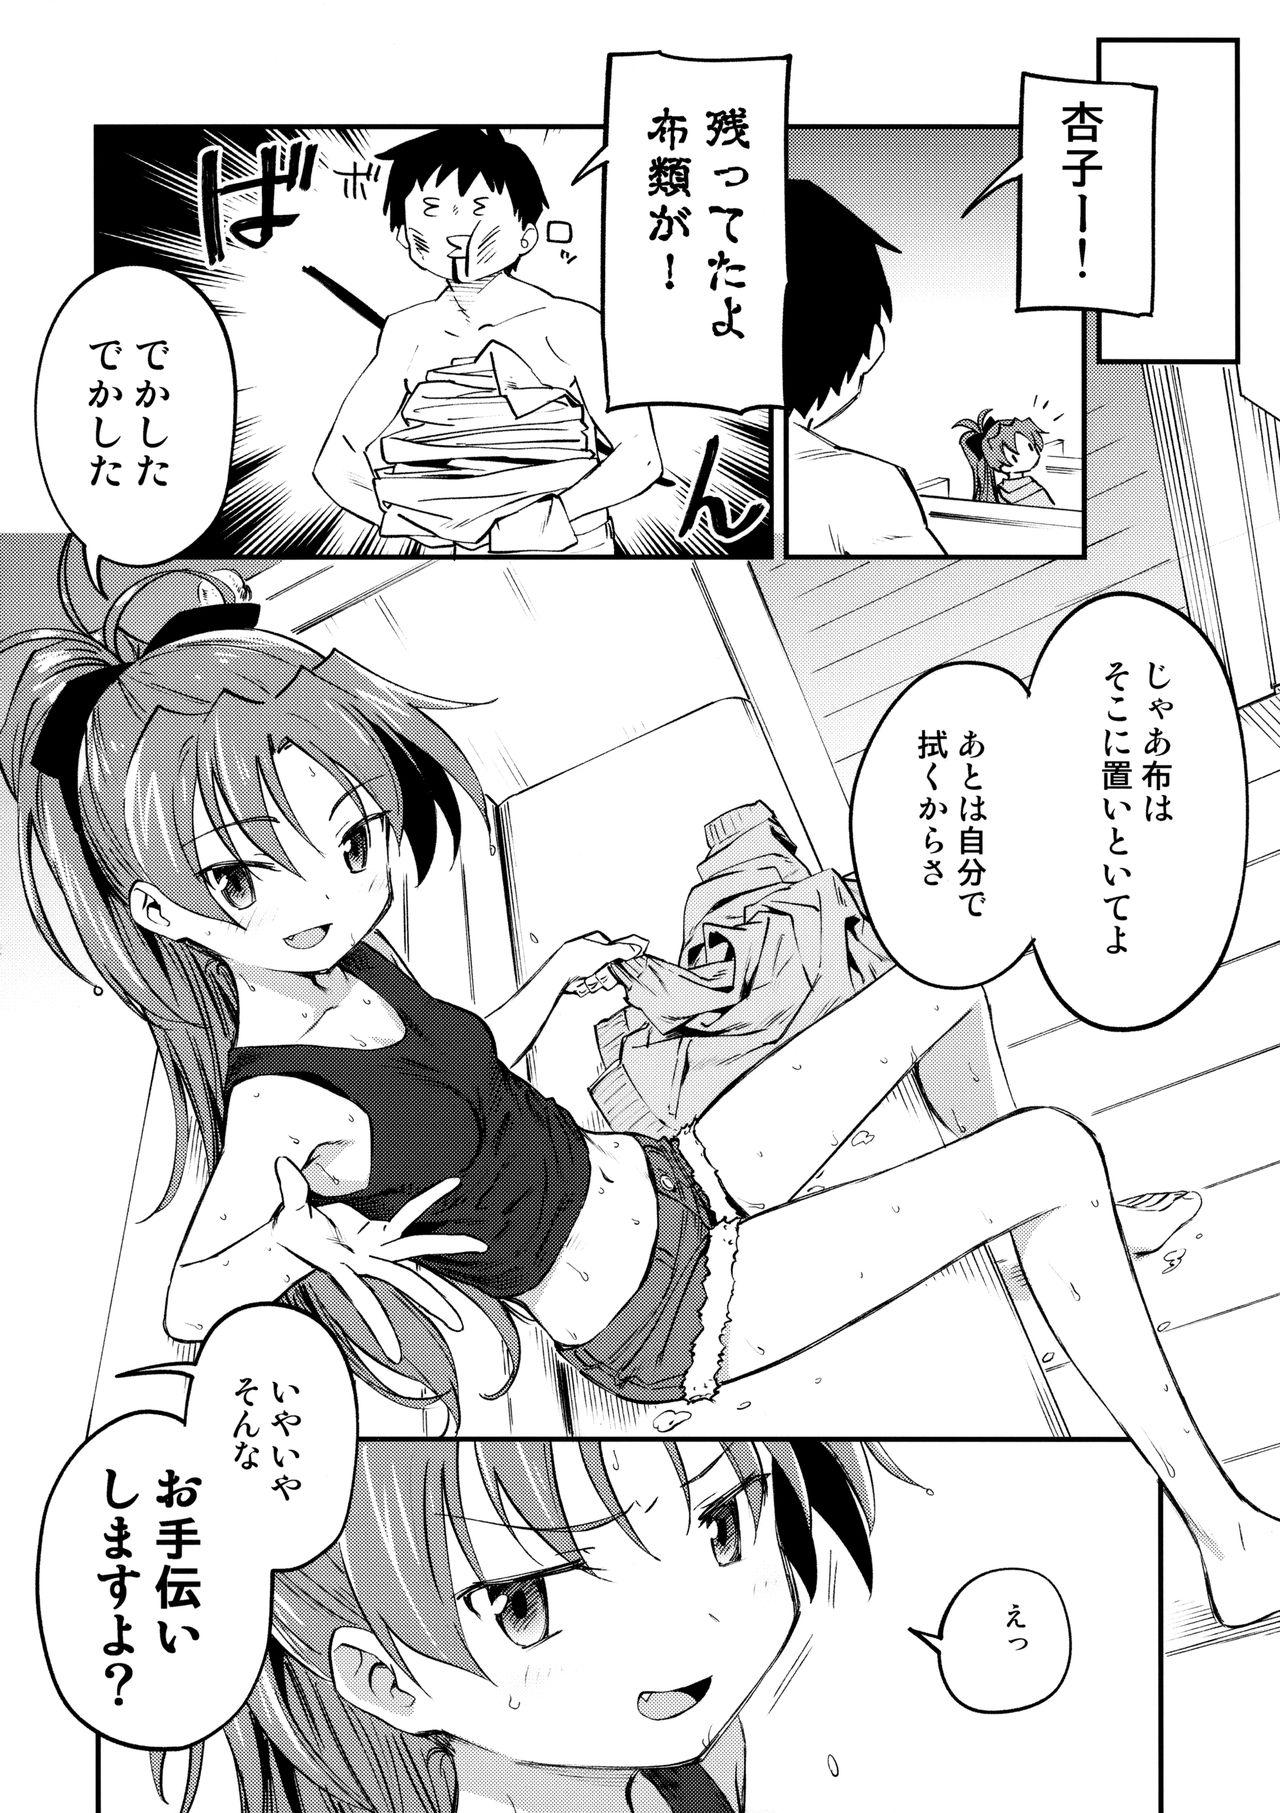 Orgasms Kyouko to Are Suru Hon 3 - Puella magi madoka magica Perra - Page 5